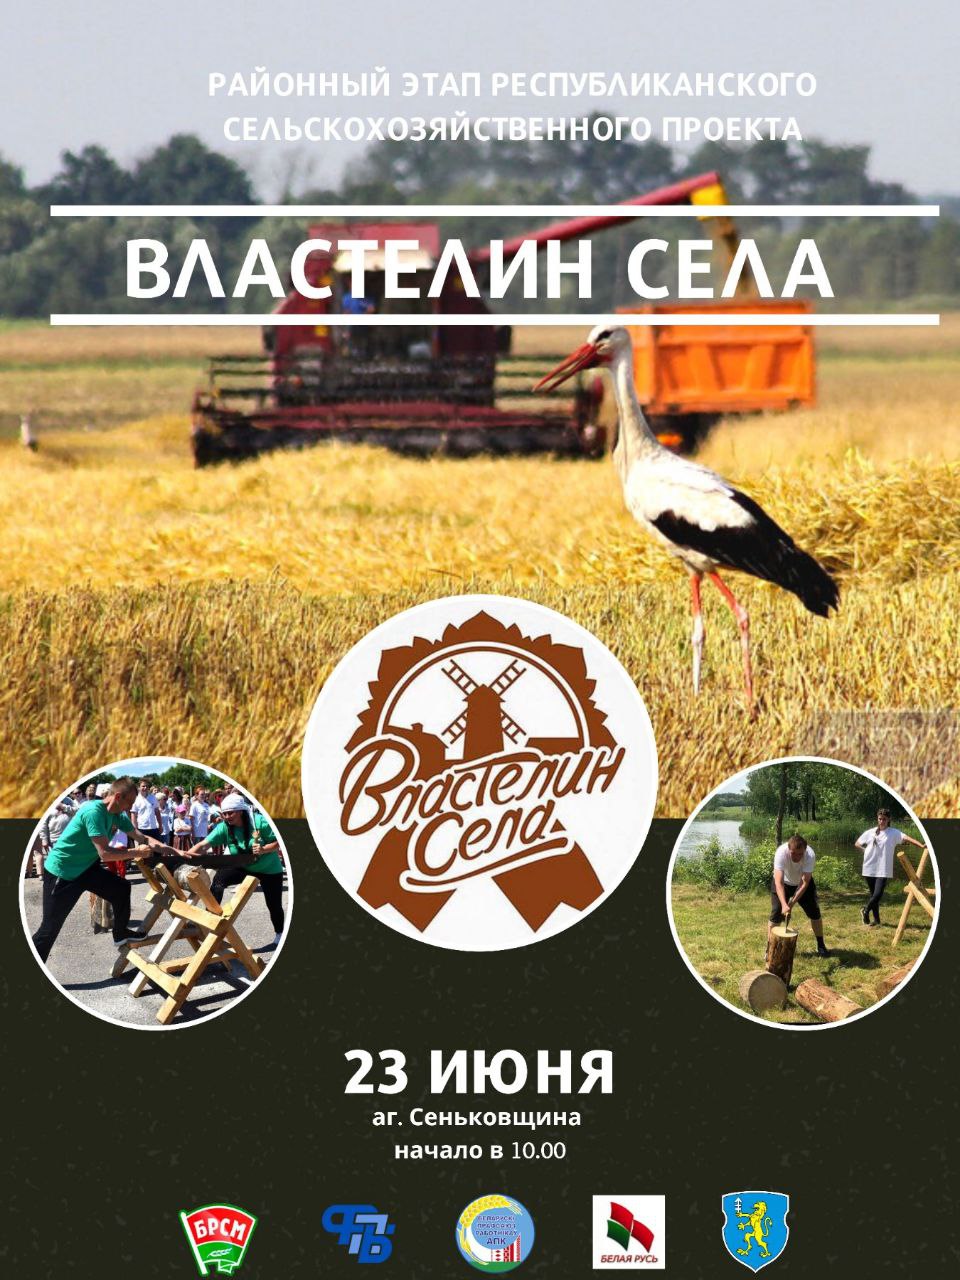 Районный этап конкурса «Властелин села» пройдет 23 июня в аг. Сеньковщина